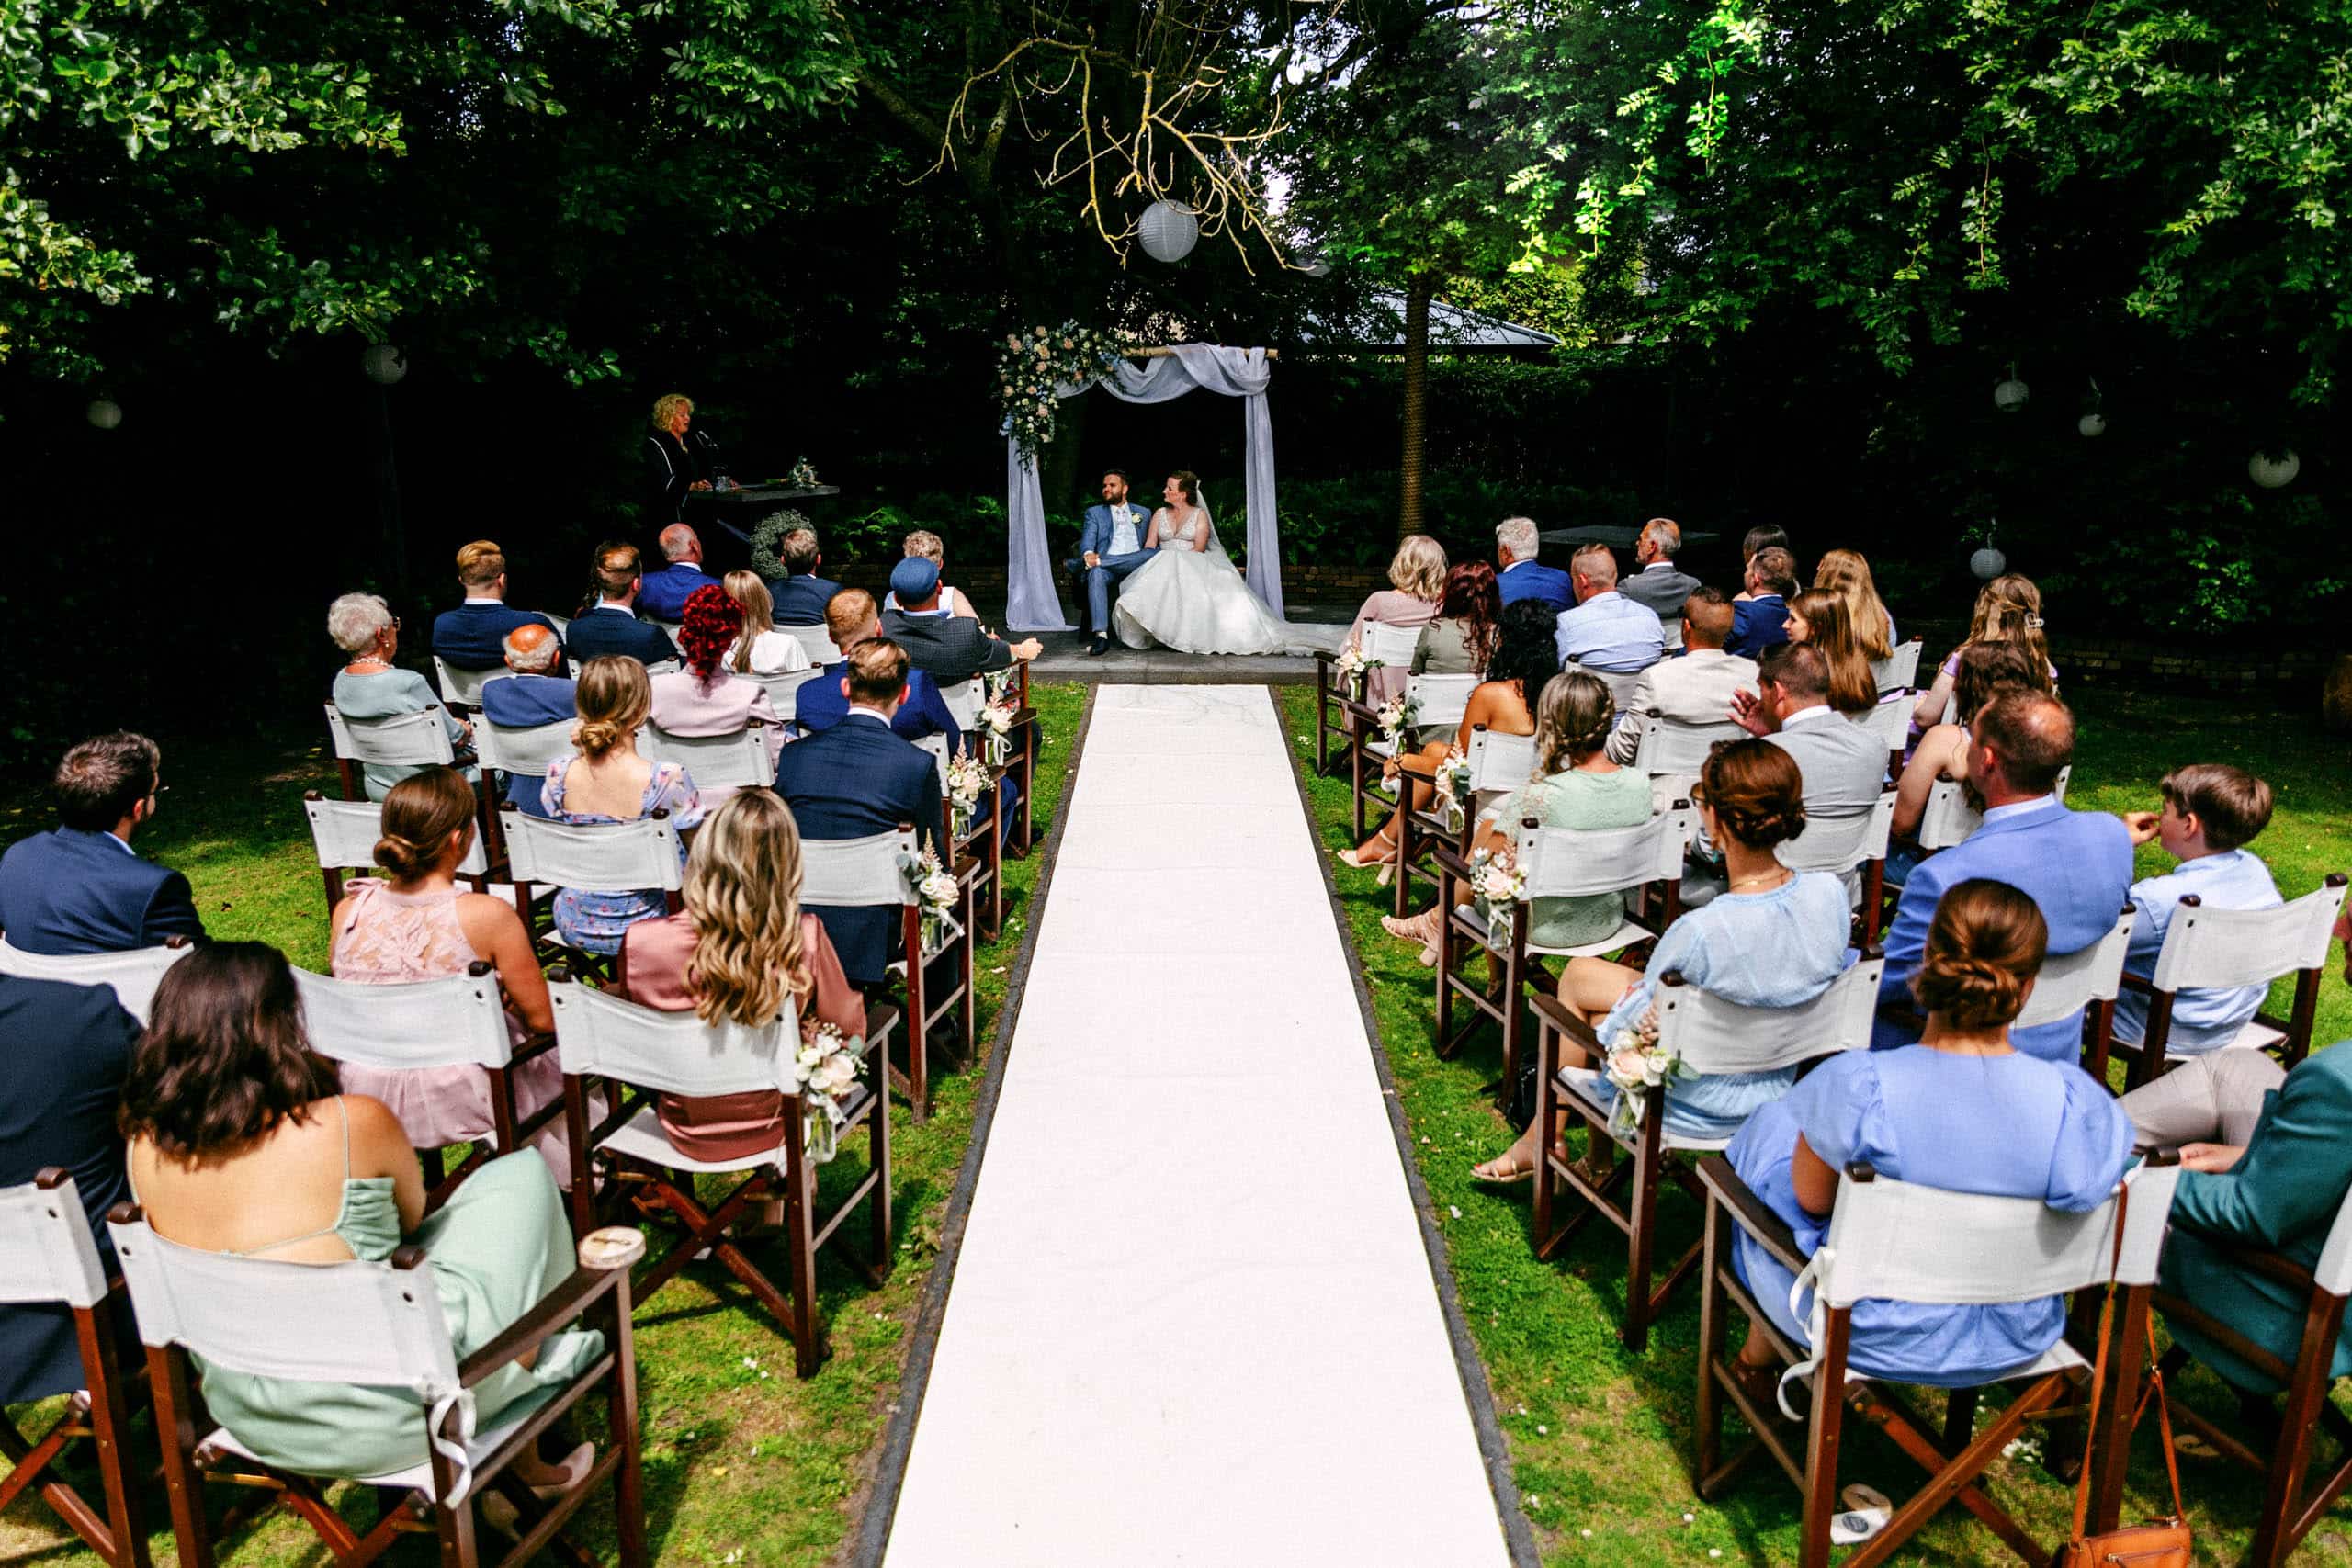 Een tuinhuwelijksceremonie waar mensen op stoelen zitten,
naast een handige Bruiloft checklist voor planningsdoeleinden.